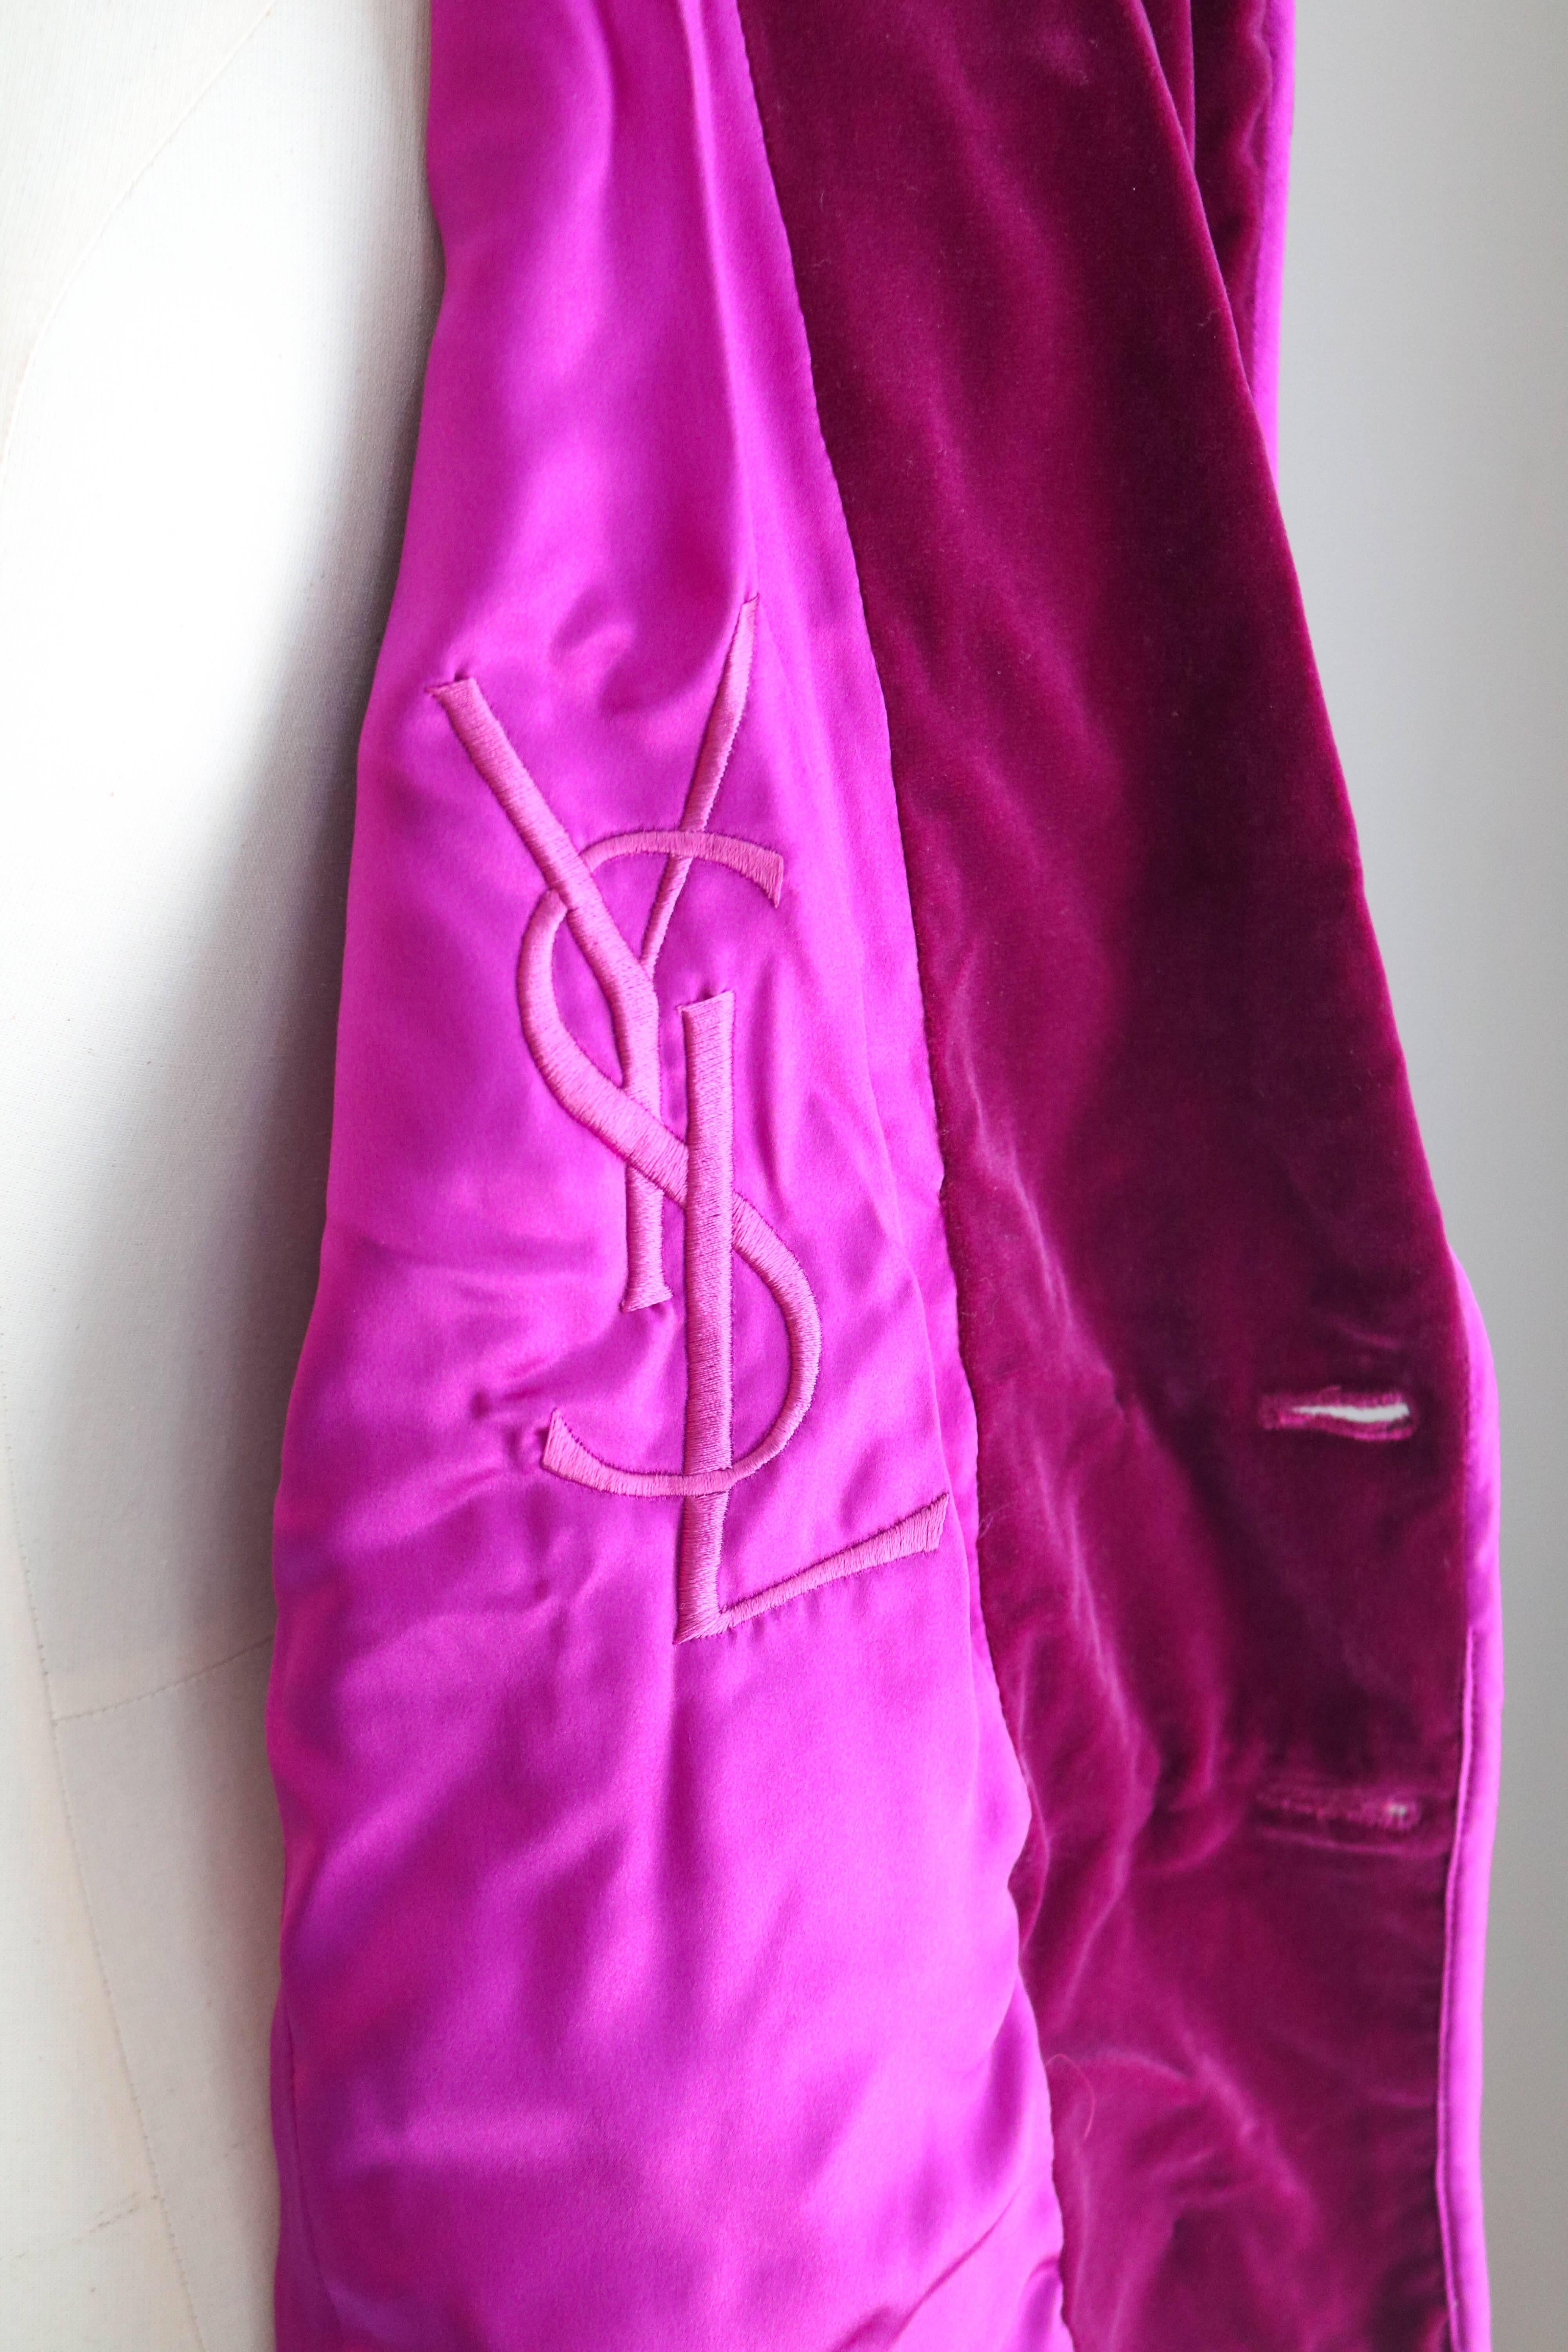 Yves Saint Laurent Rive Gauche Velvet Evening Jacket 48 For Sale 3